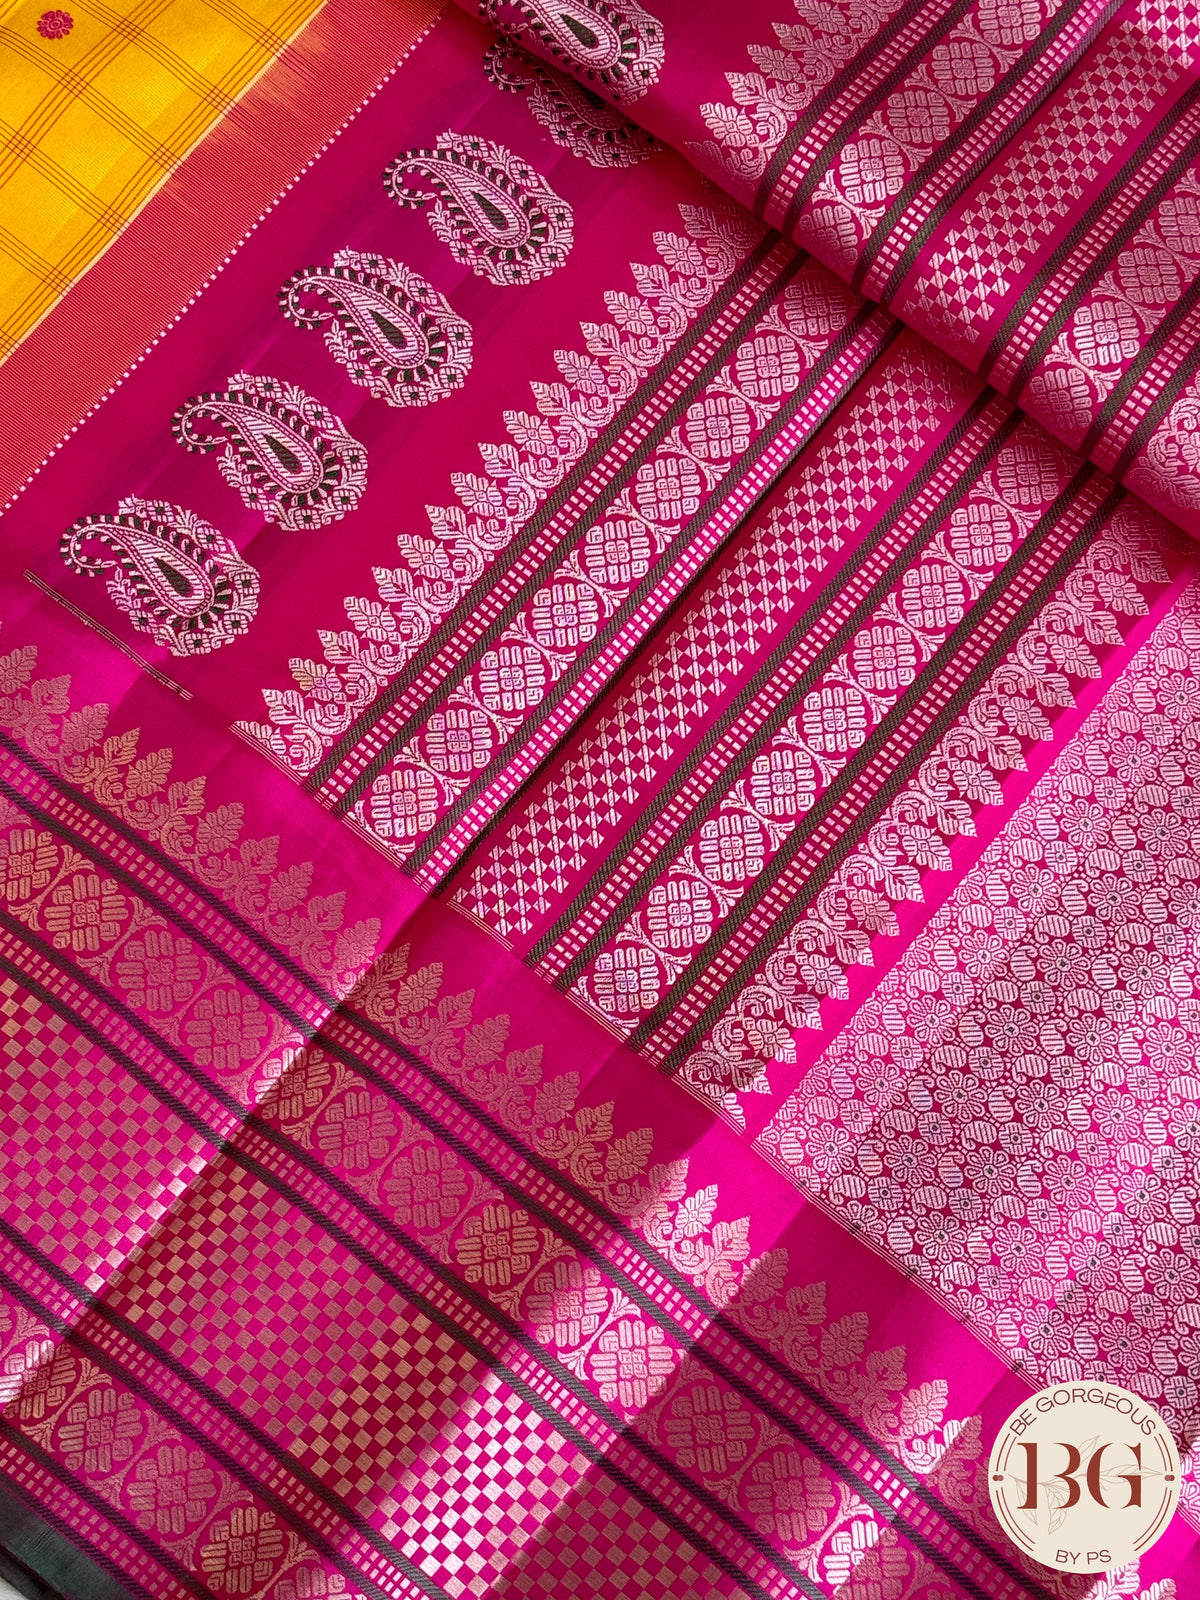 Gadwal handloom pure silk saree - yellow and pink